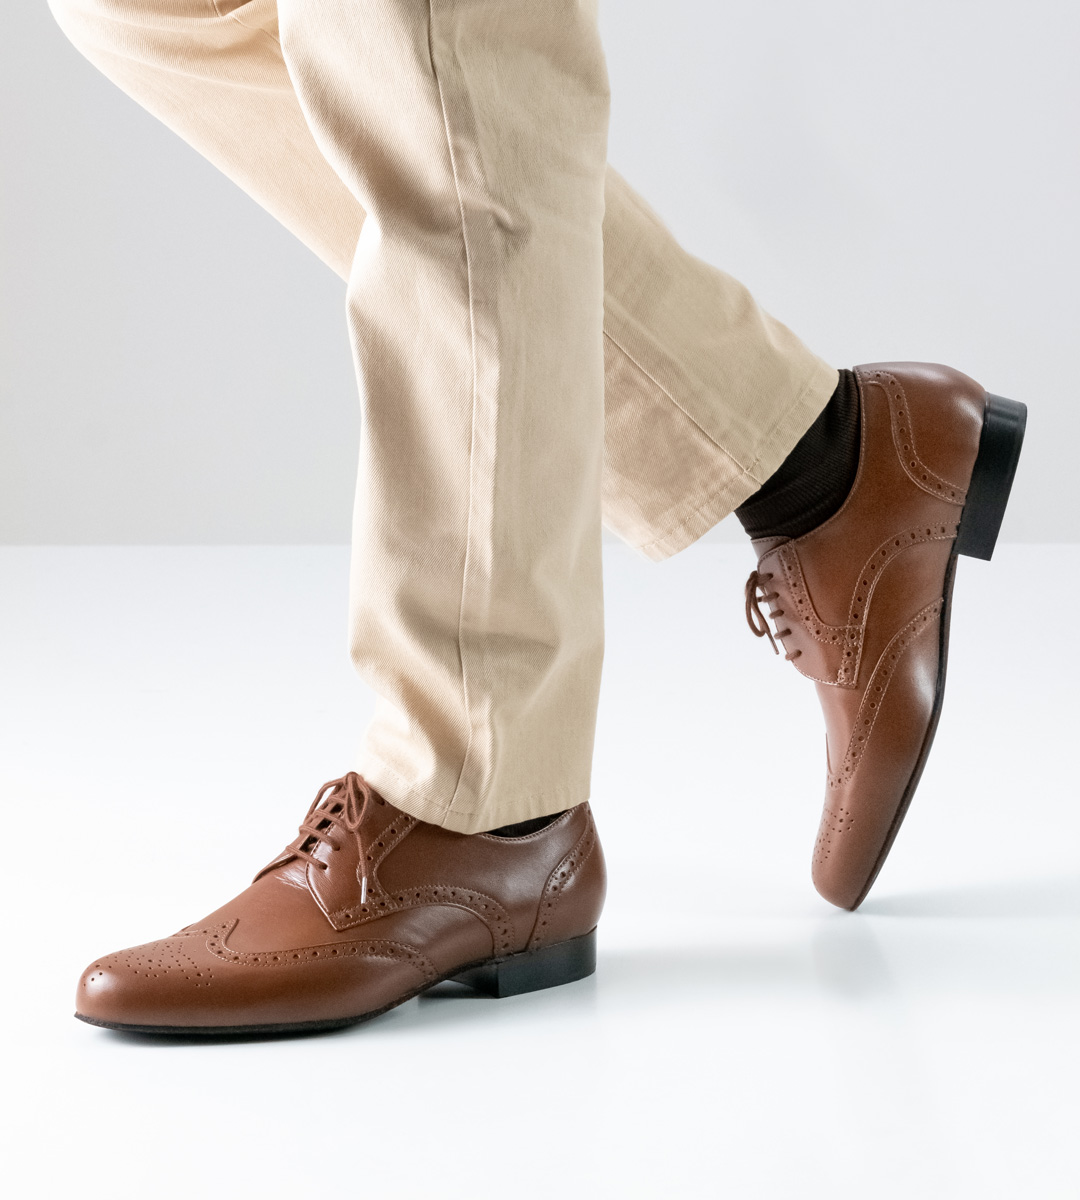 cognac coloured men's dance shoe with 2 cm heel height